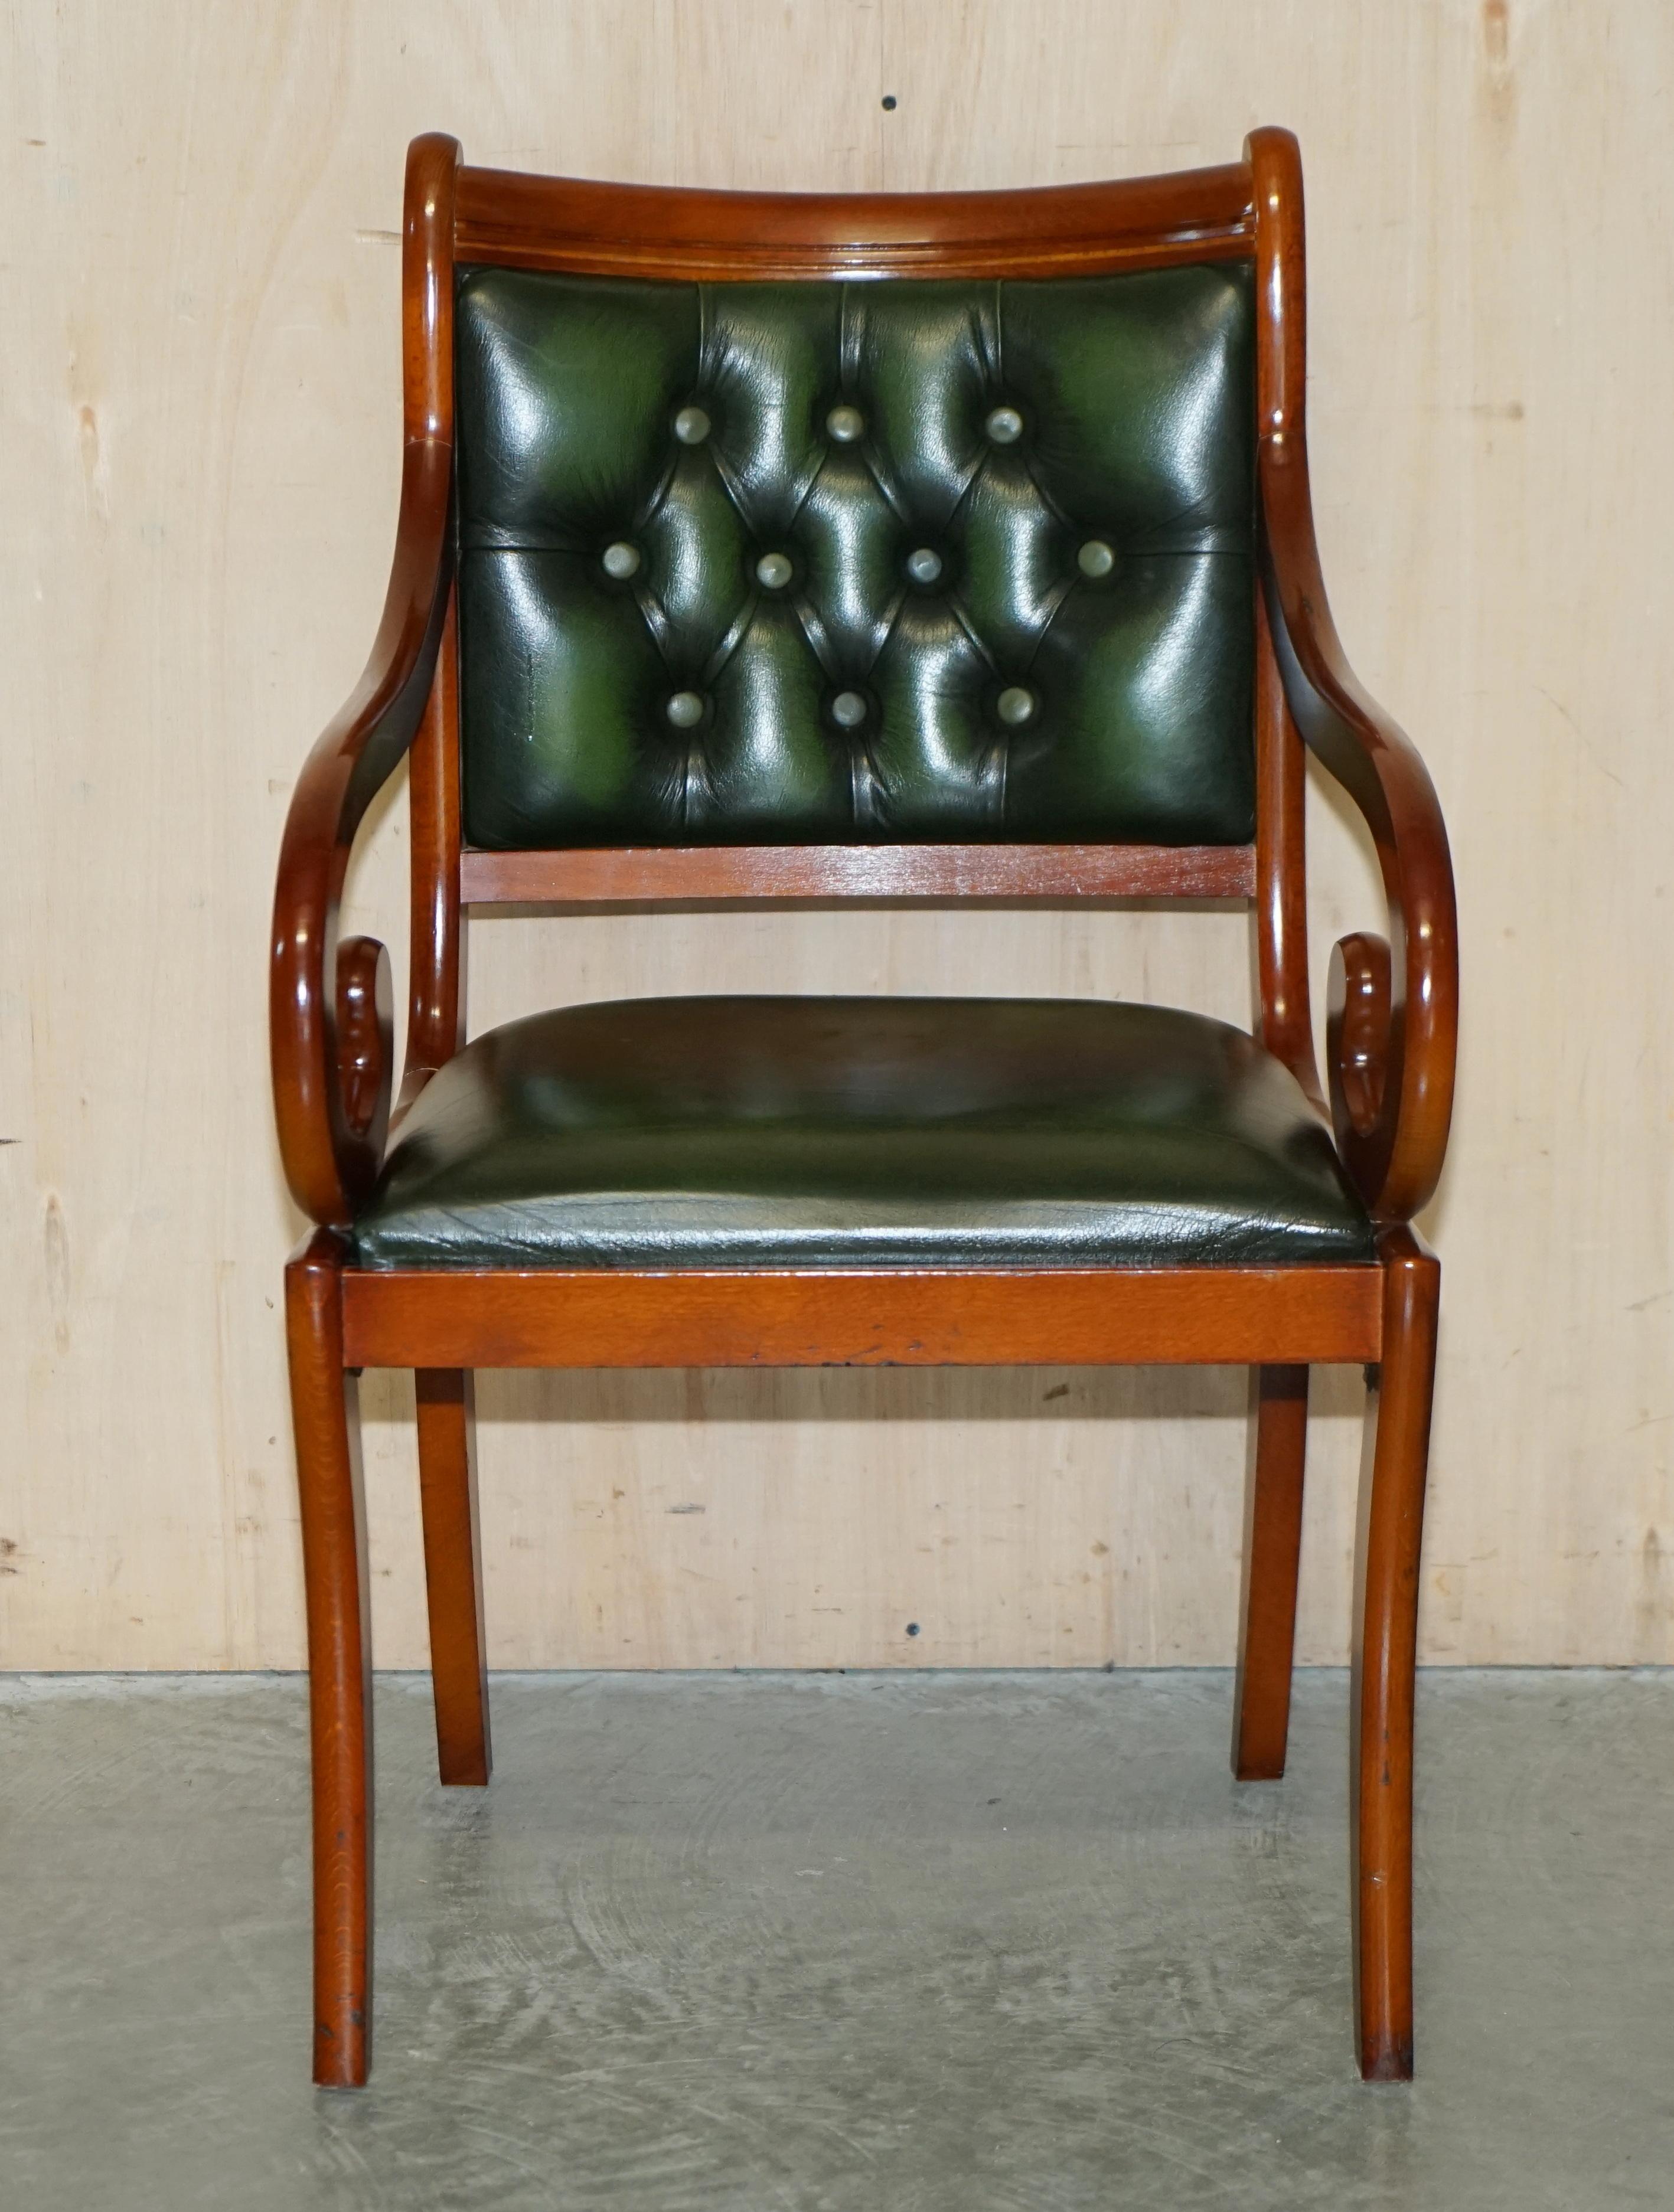 Royal House Antiques

The House Antiques a le plaisir de proposer à la vente cette charmante chaise de bureau en cuir vert boutonné de Chesterfield. 

Veuillez noter que les frais de livraison indiqués ne sont qu'un guide, ils couvrent uniquement la